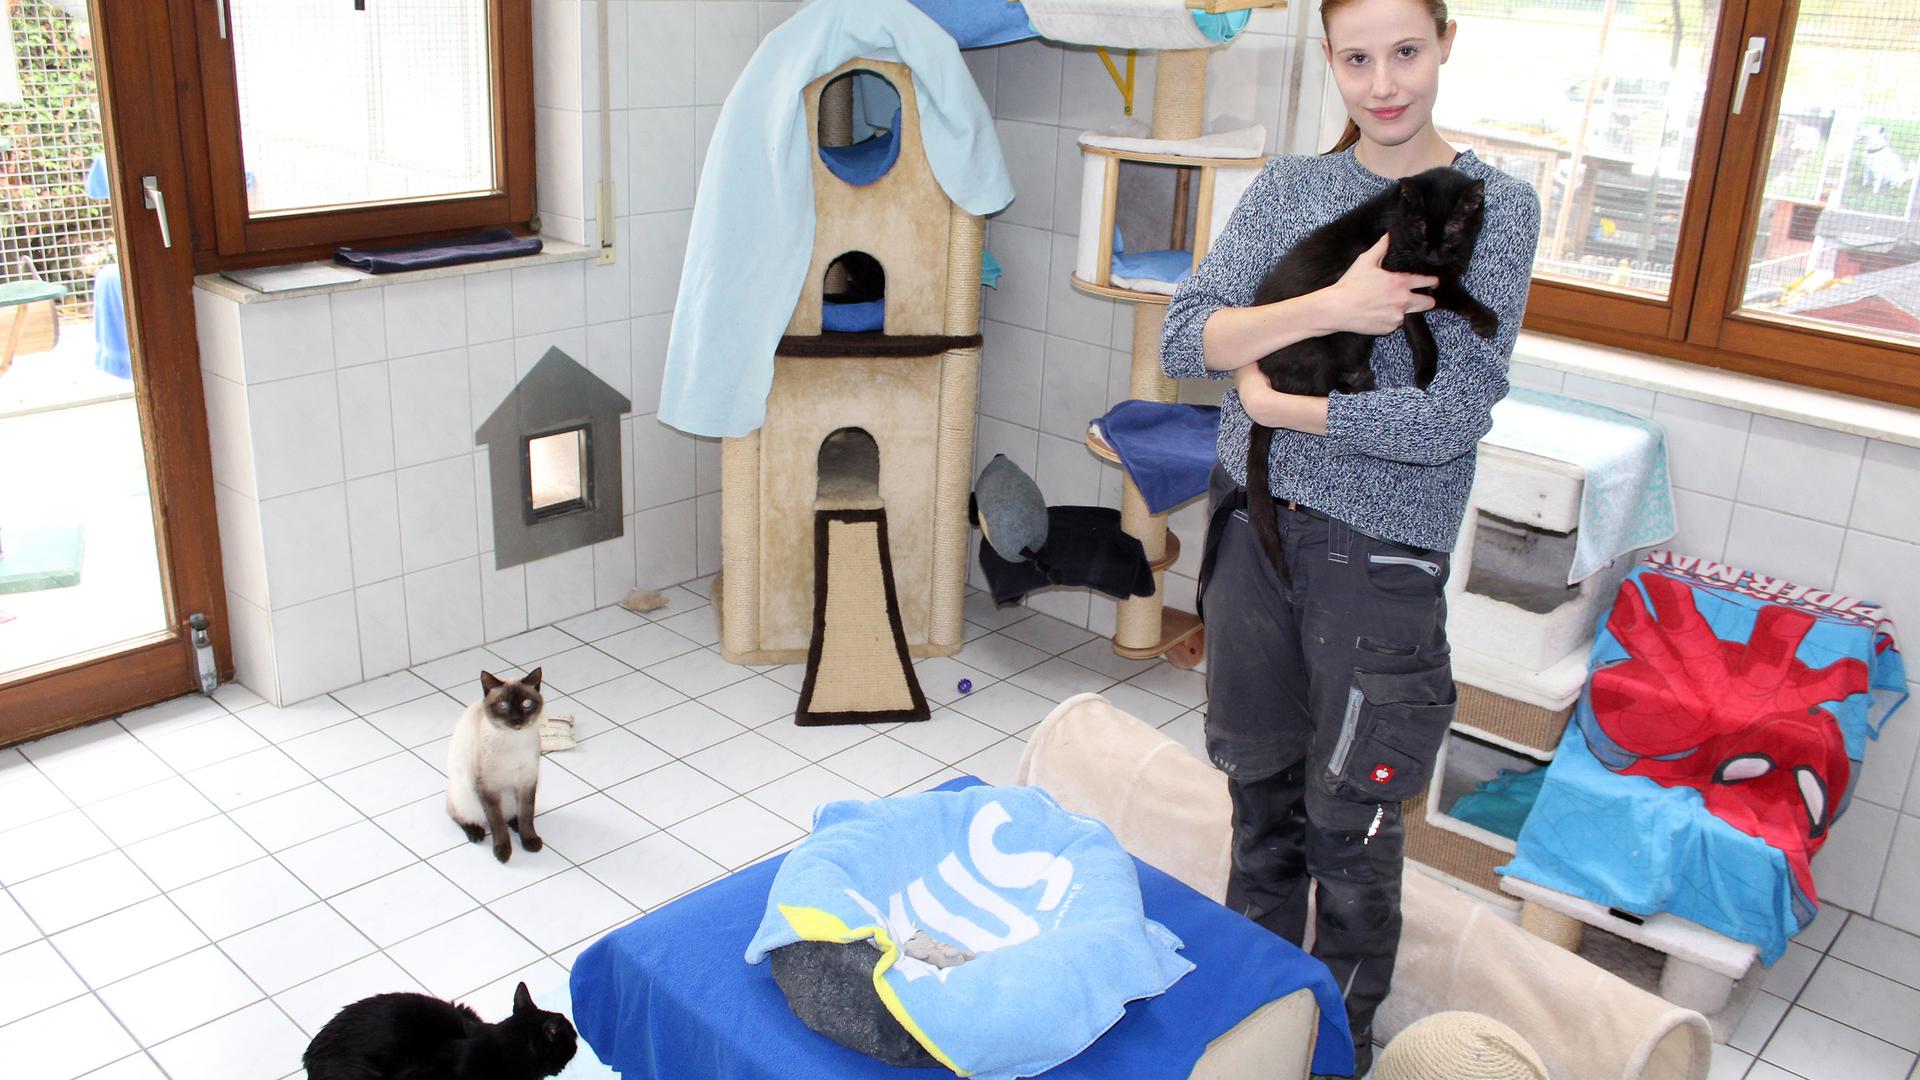 Eine junge FRau mit einer schwarzen Katze auf dem Arm, ein Katzenkörbchen in der Mitte und zwei weitere Katzen.